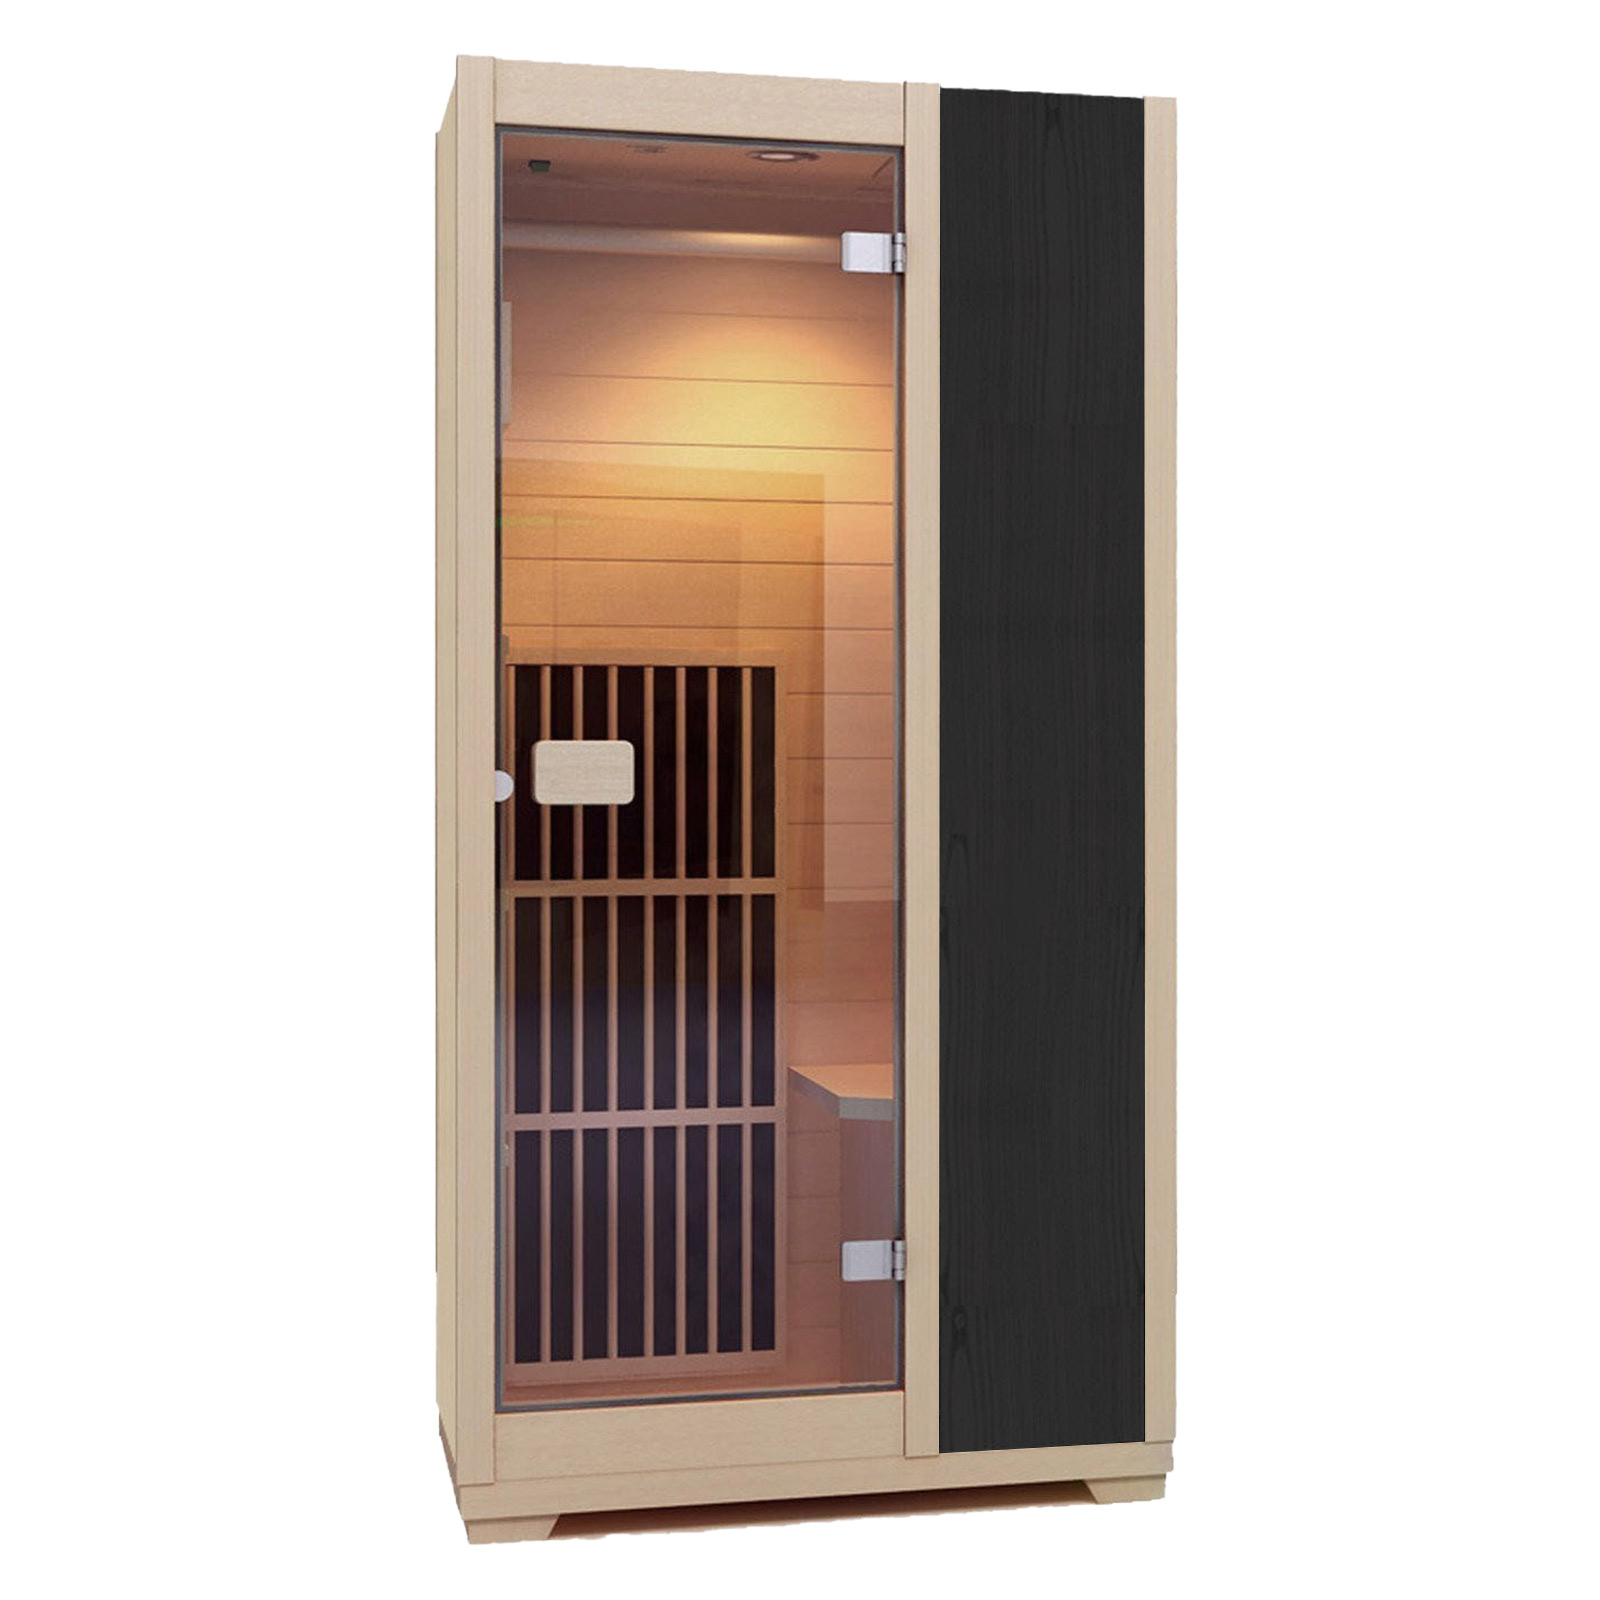 Zen Ferninfrarot-Sauna für 1 Person - Schwarz